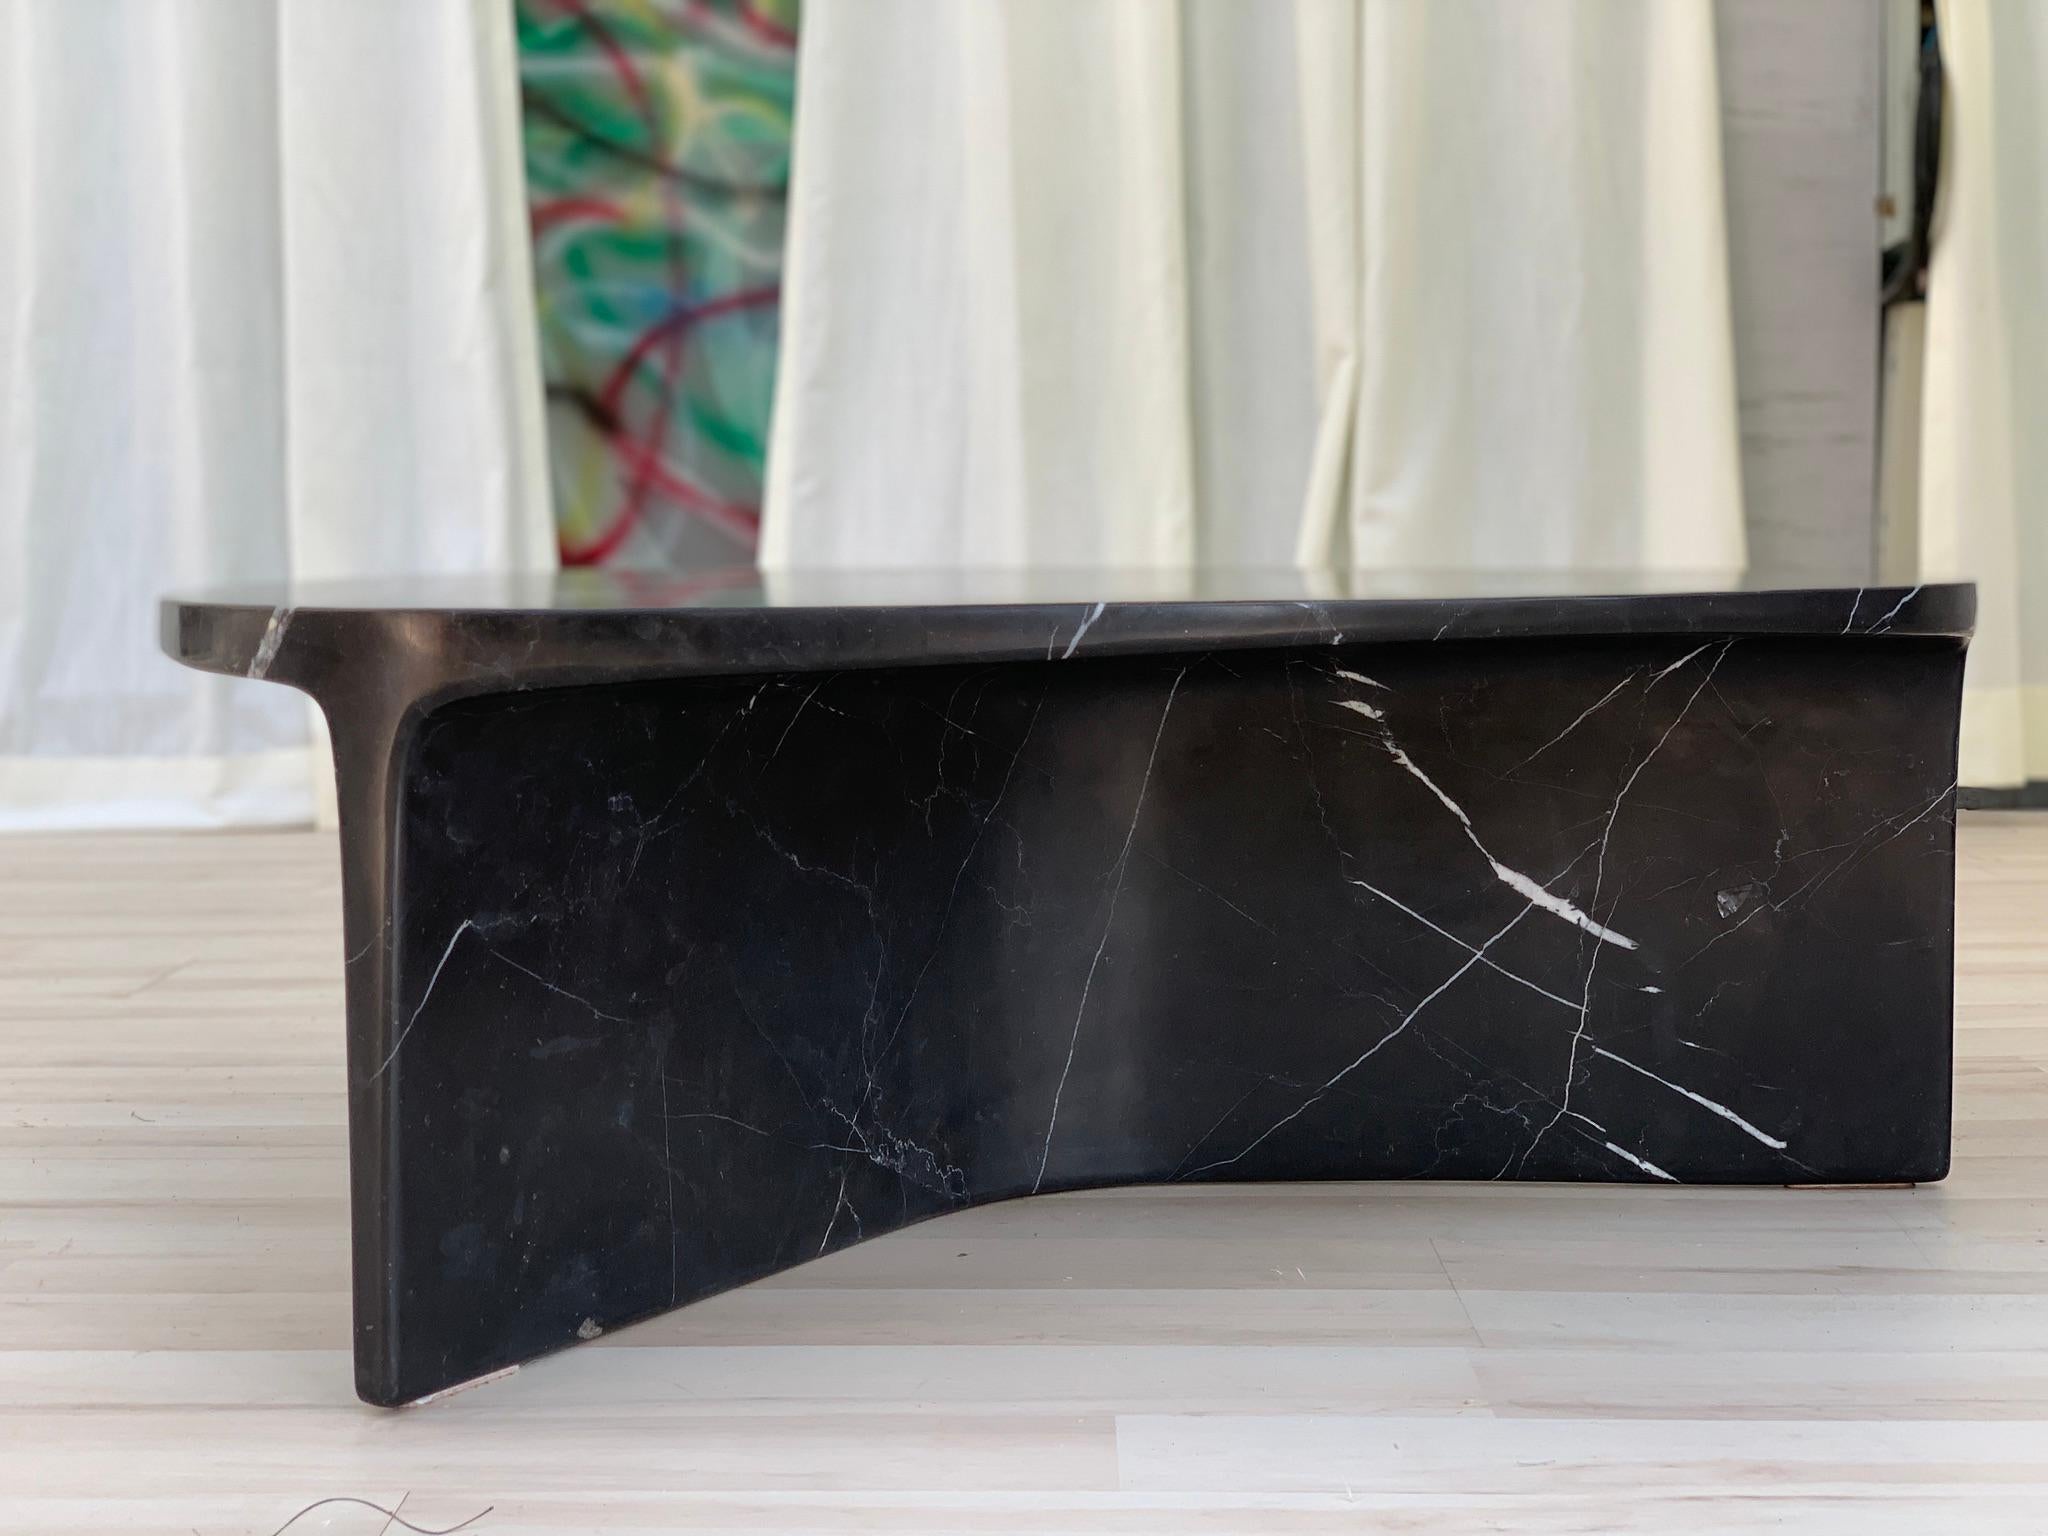 Der Carv Couchtisch wird aus einem einzigen Block aus schwarzem Nero Marquina-Marmor geschnitten.
Wesentliches und organisches Design, das auf natürliche Weise eine flache, fließende Tischplatte schafft
zu einem Y-förmigen Fuß, der die Adern des